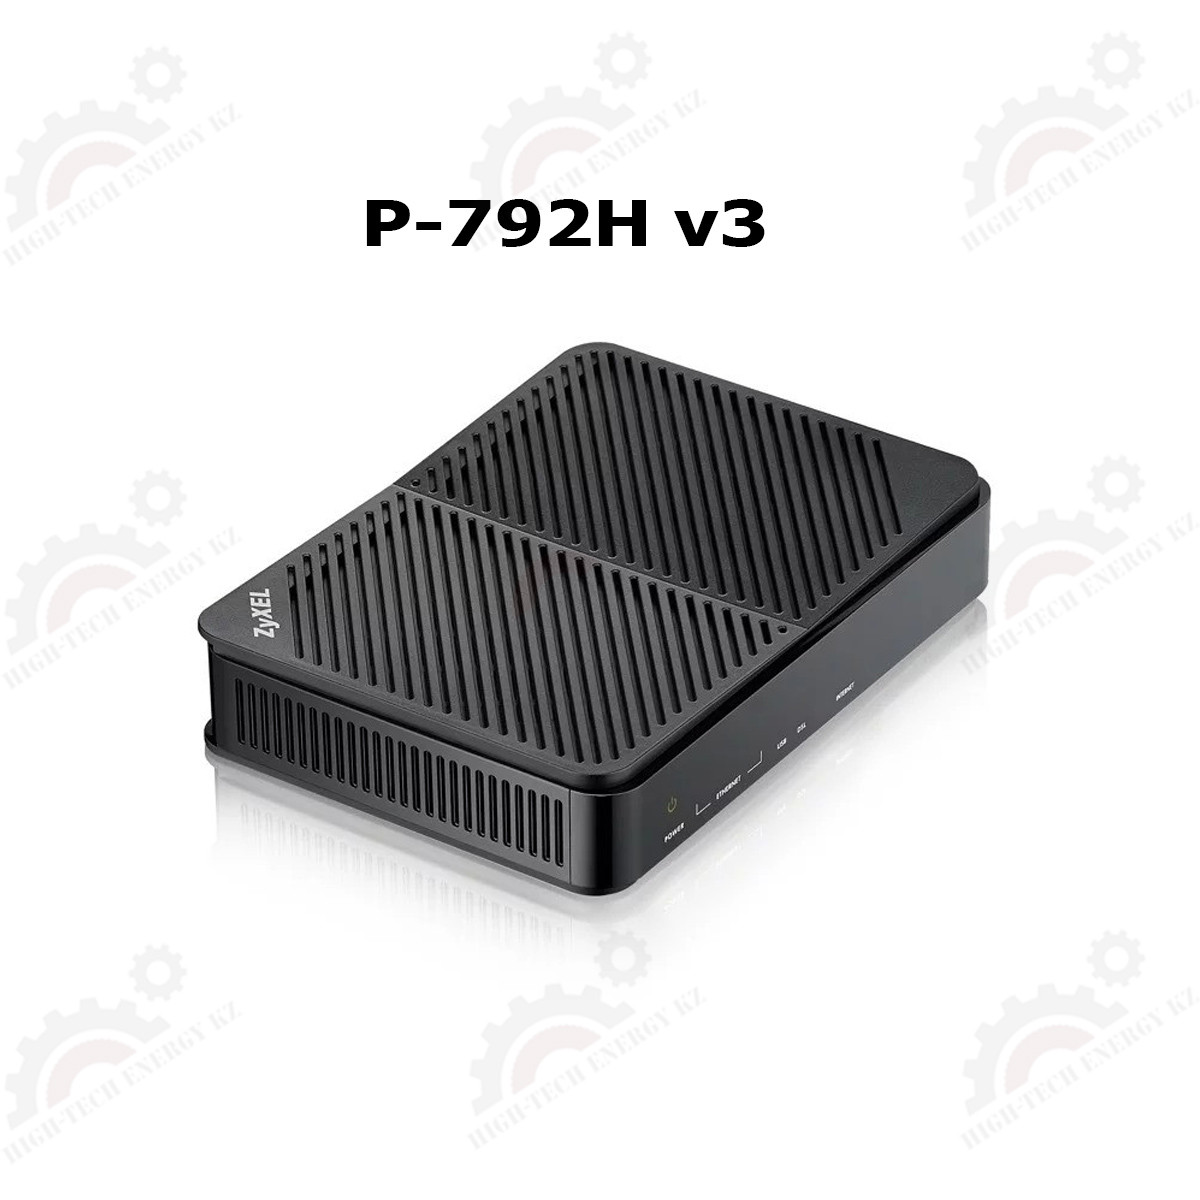 Модем-маршрутизатор SHDSL Zyxel P-791R v3, режим точка-точка, скорость до 15,3 Мбит/сек, 1xRJ11, шт